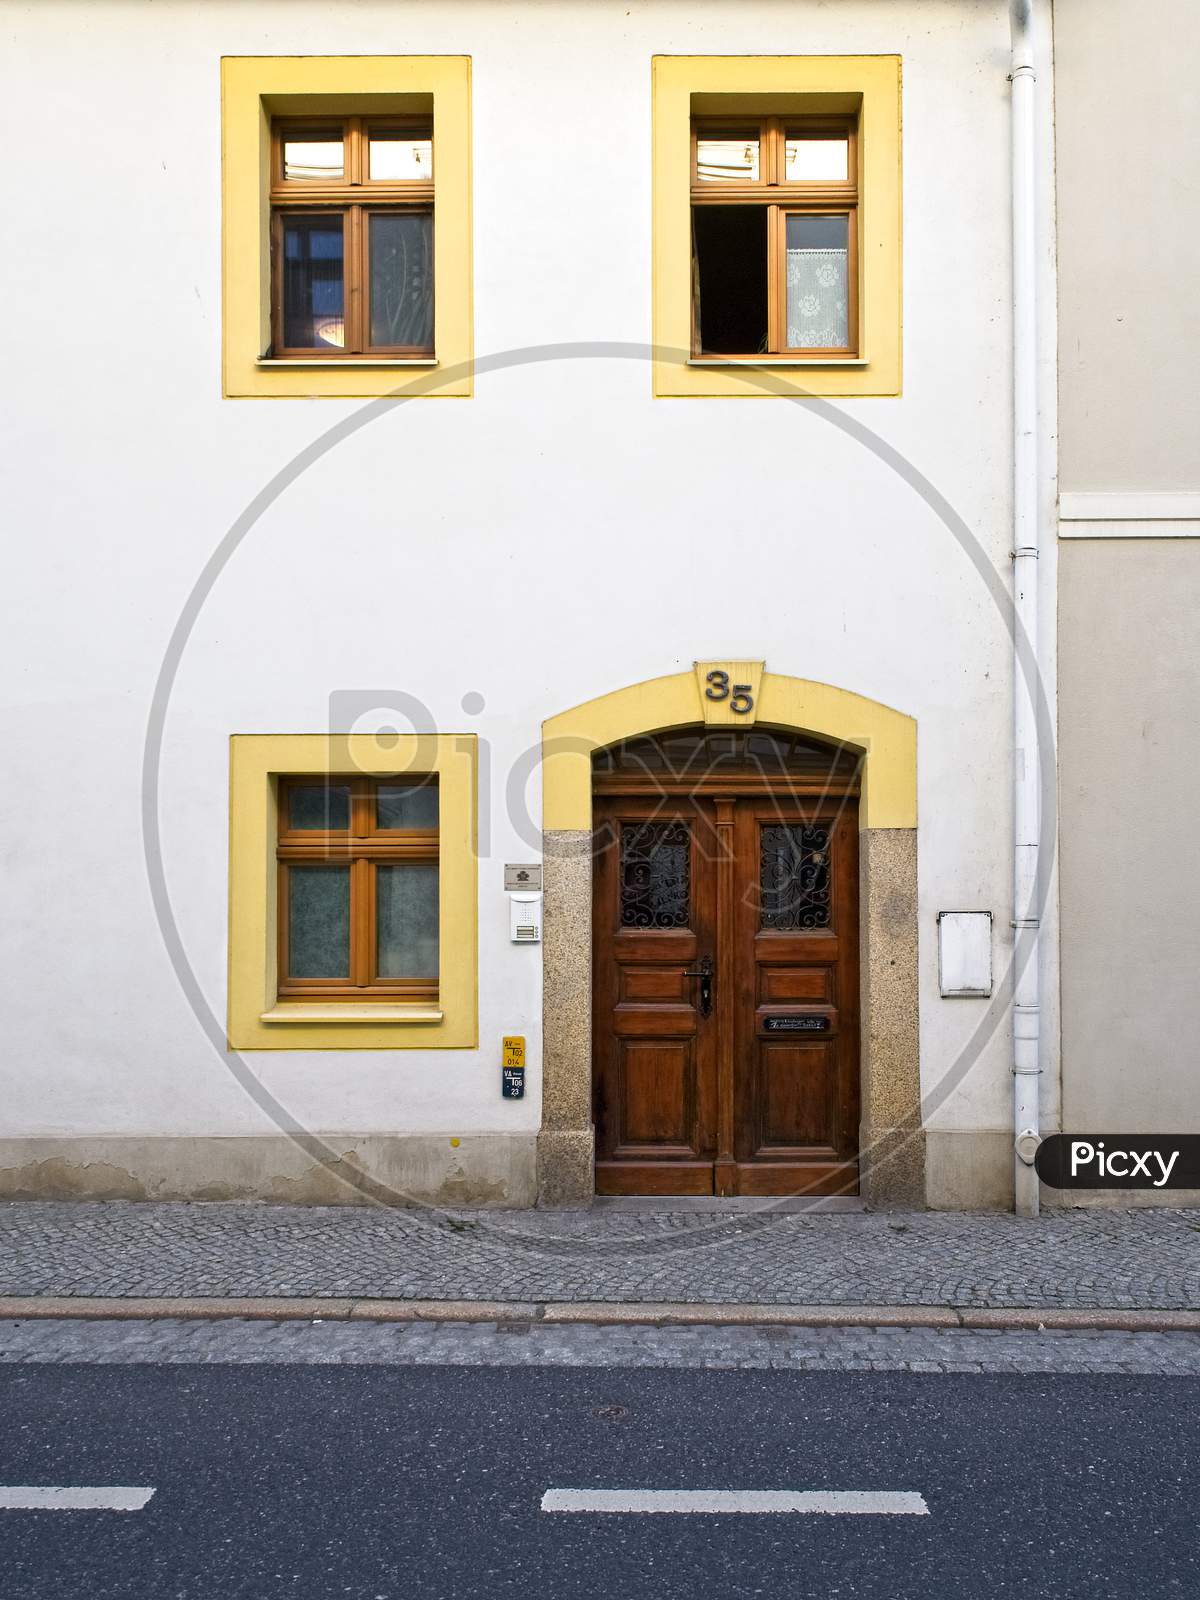 Front door of old house in historical part of Goerlitz